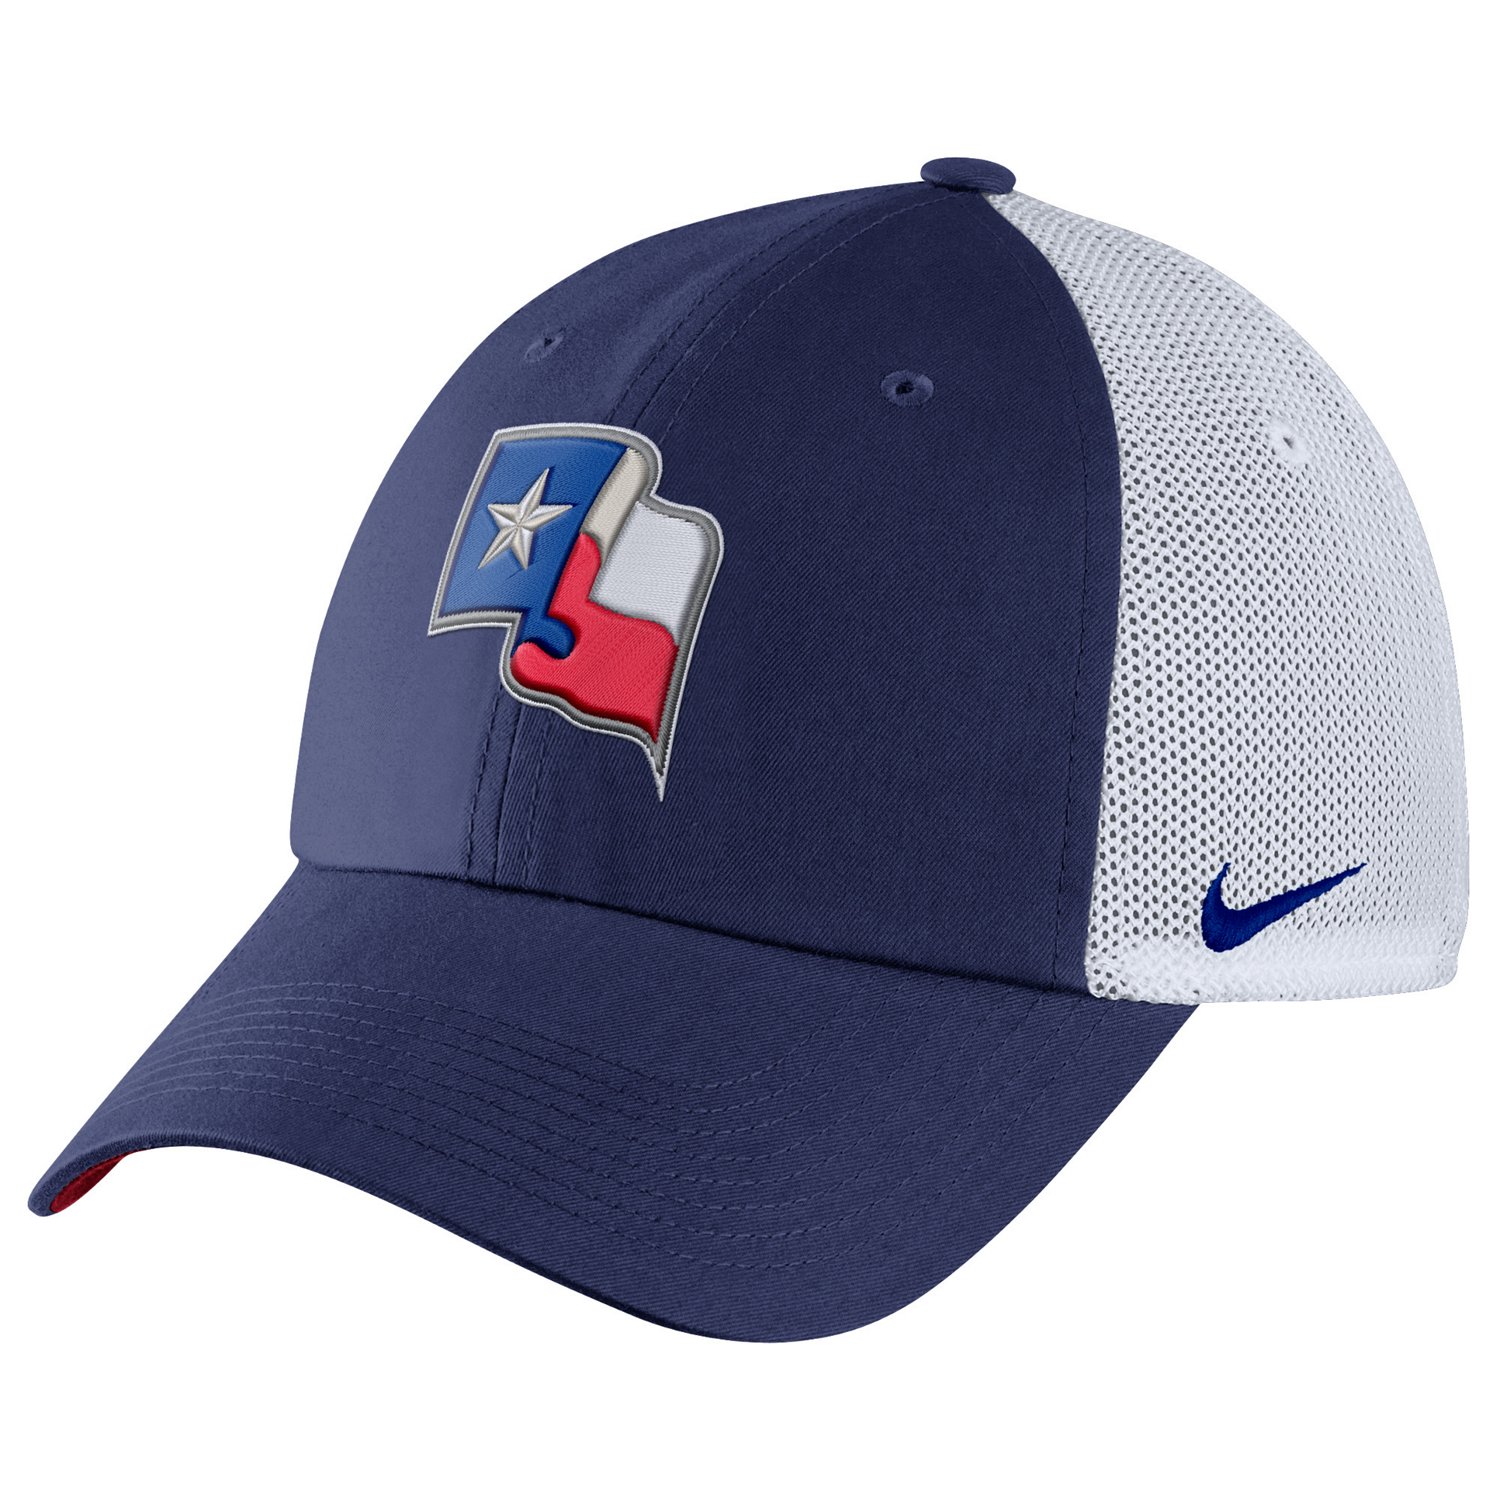 Nike™ Adults' Texas Rangers Heritage86 DriFIT Mix Cap Academy